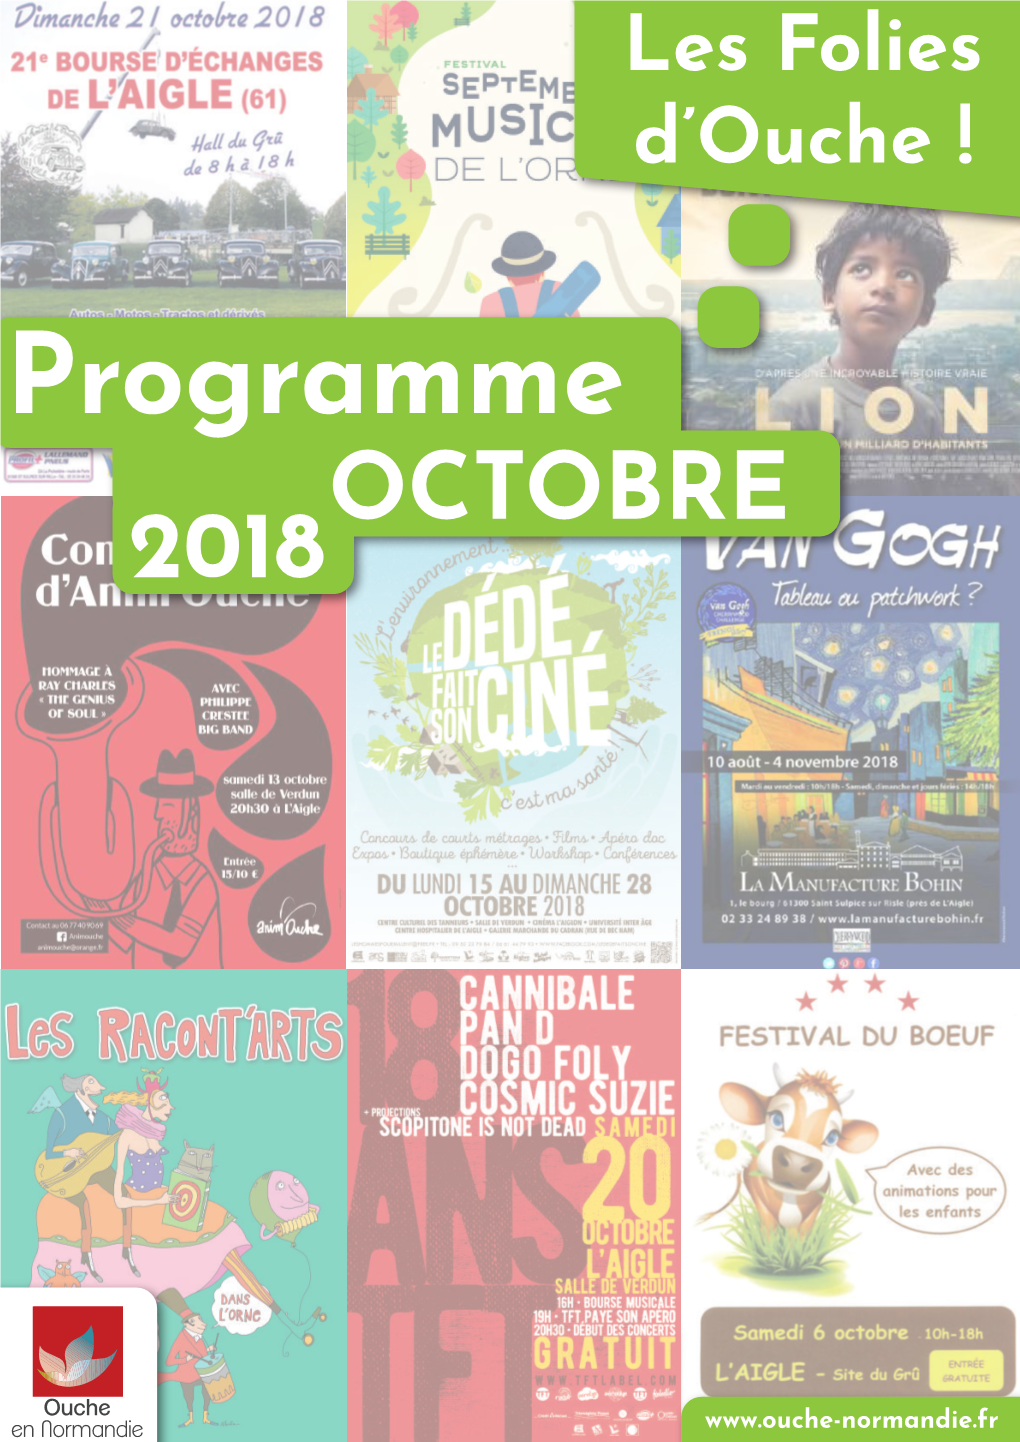 Programme OCTOBRE 2018